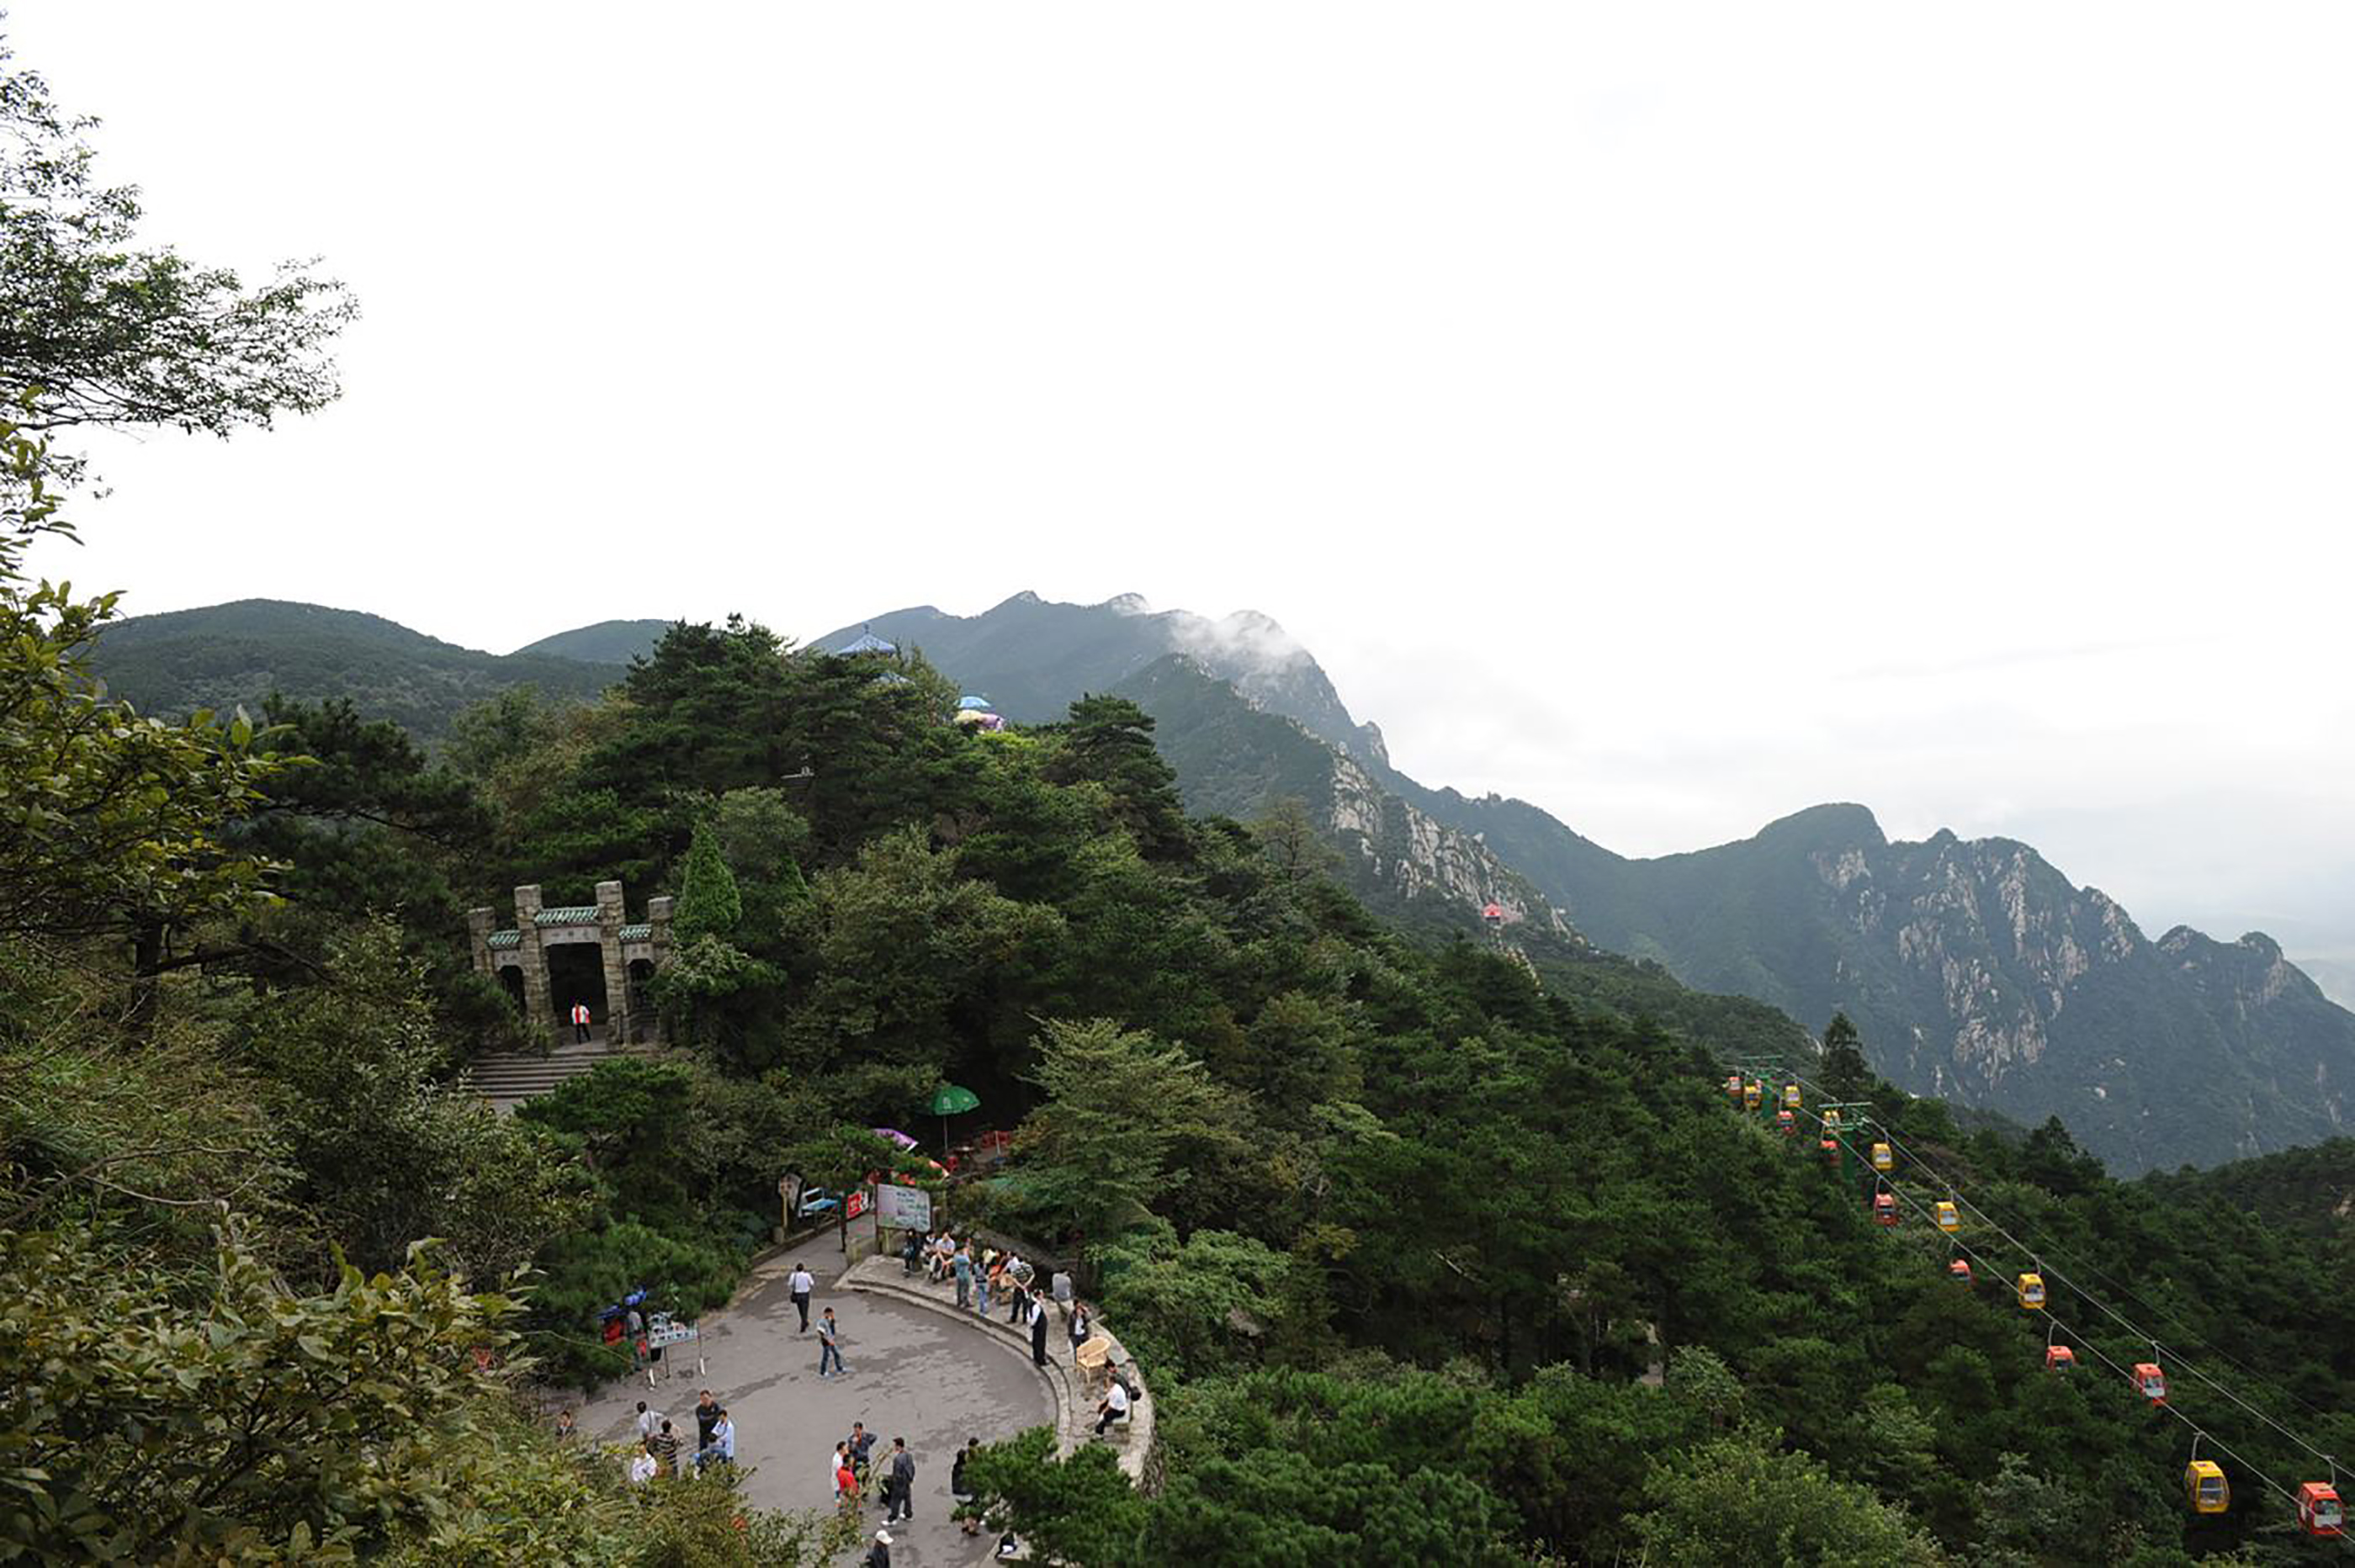 江西庐山,不仅奇秀甲天下,更是一座文化名山